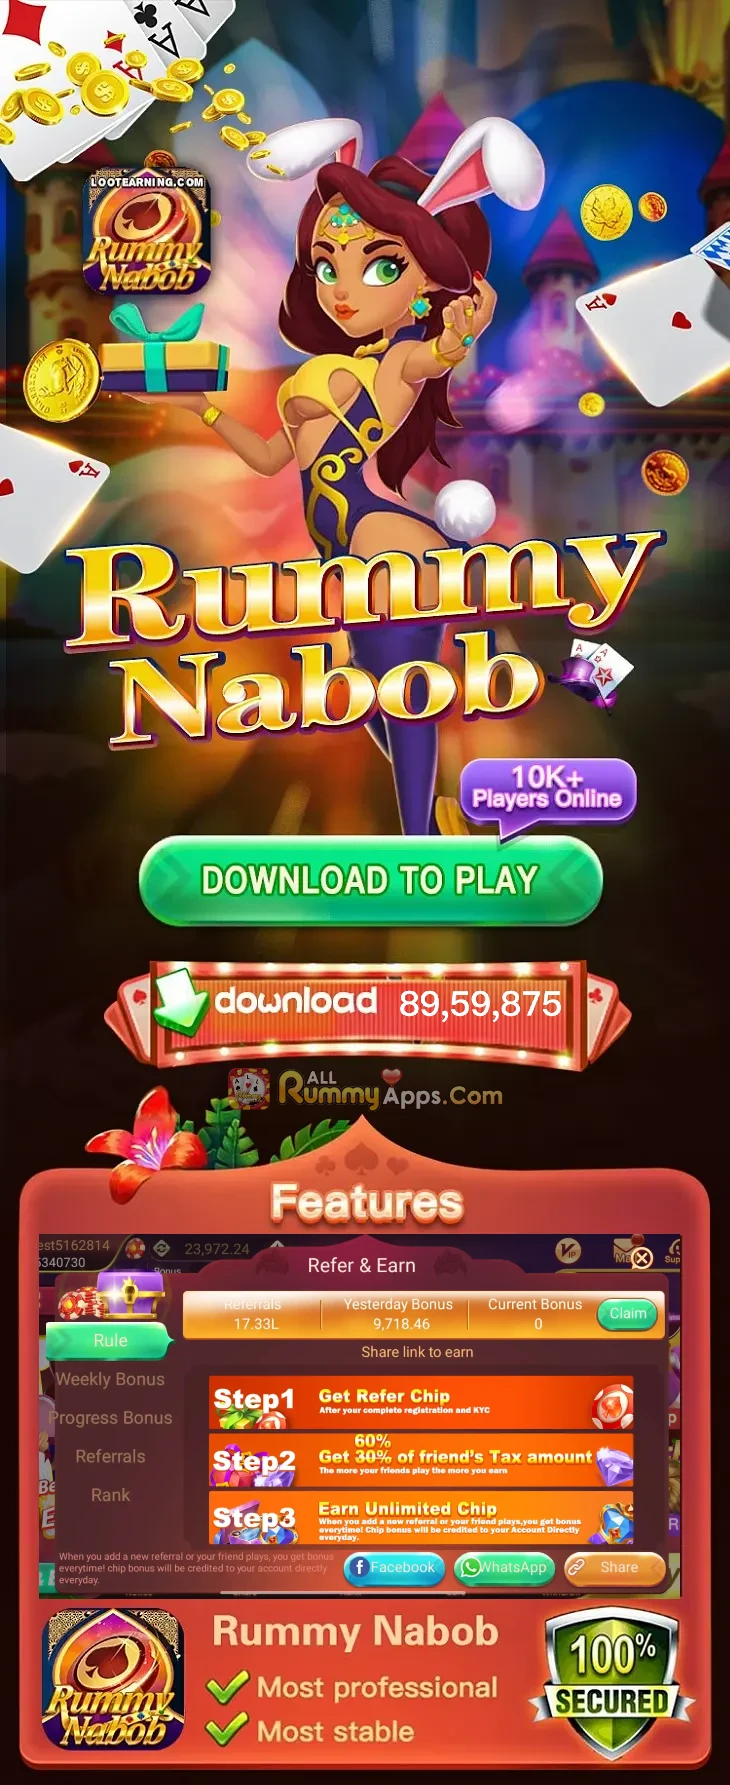 Rummy Nabob App All Rummy App